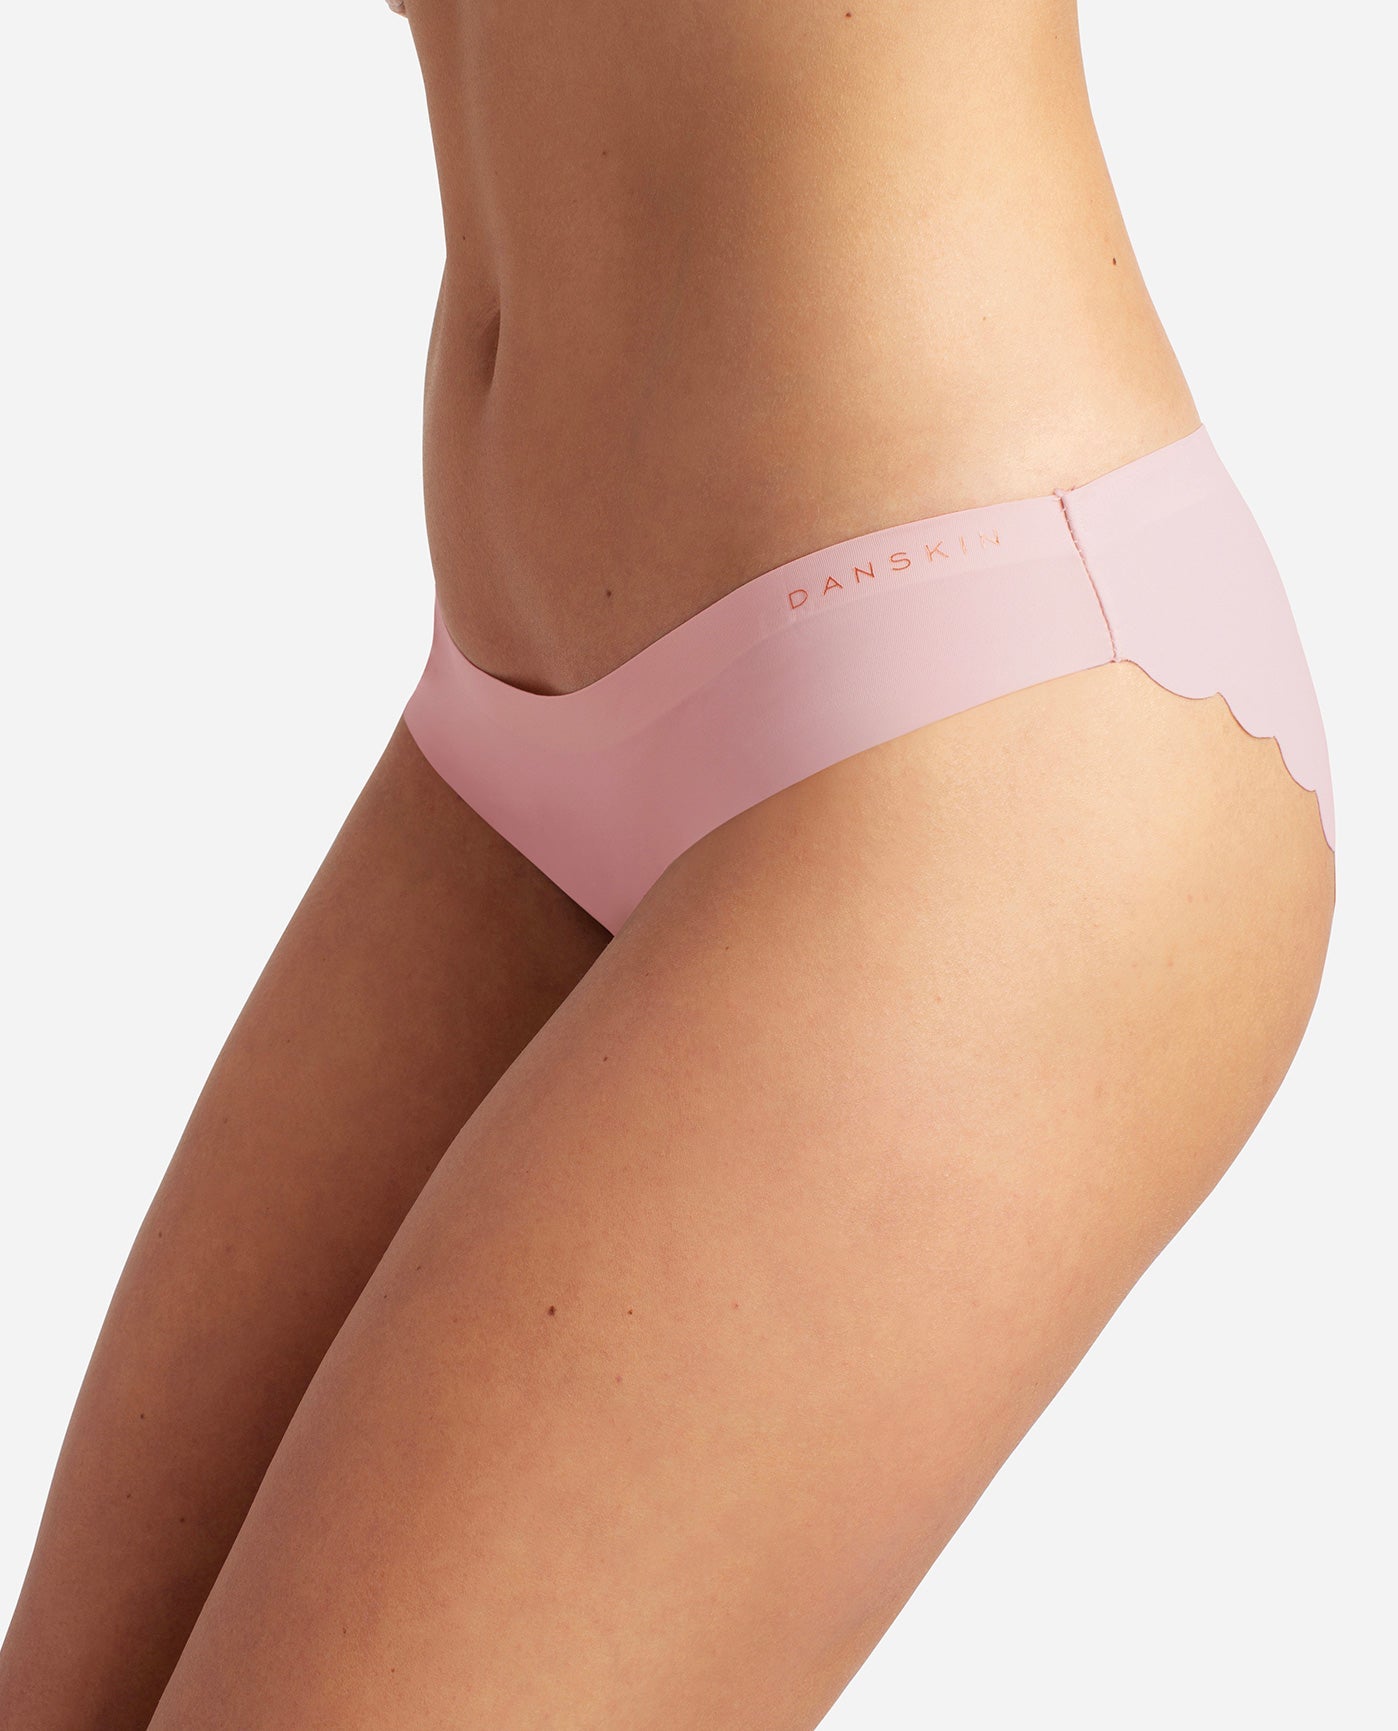 ⭐For Bundles Only⭐ Danskin Laser Cut Panties Powder Pink S